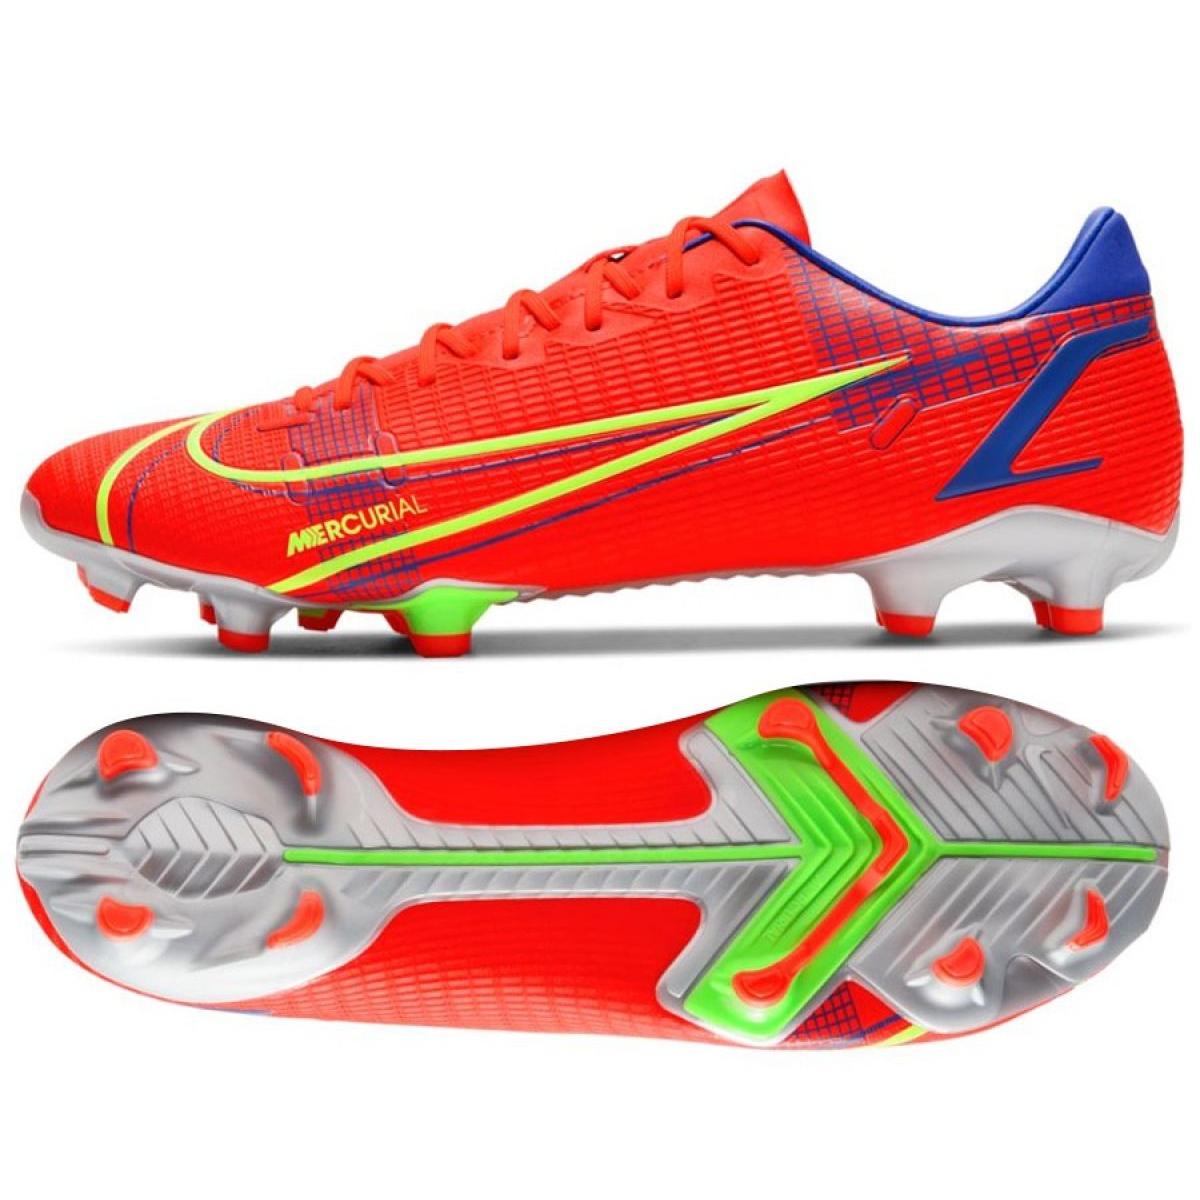 Buty piłkarskie Nike Mercurial Vapor 14 Academy FG/MG M CU5691 600 czerwone czerwone